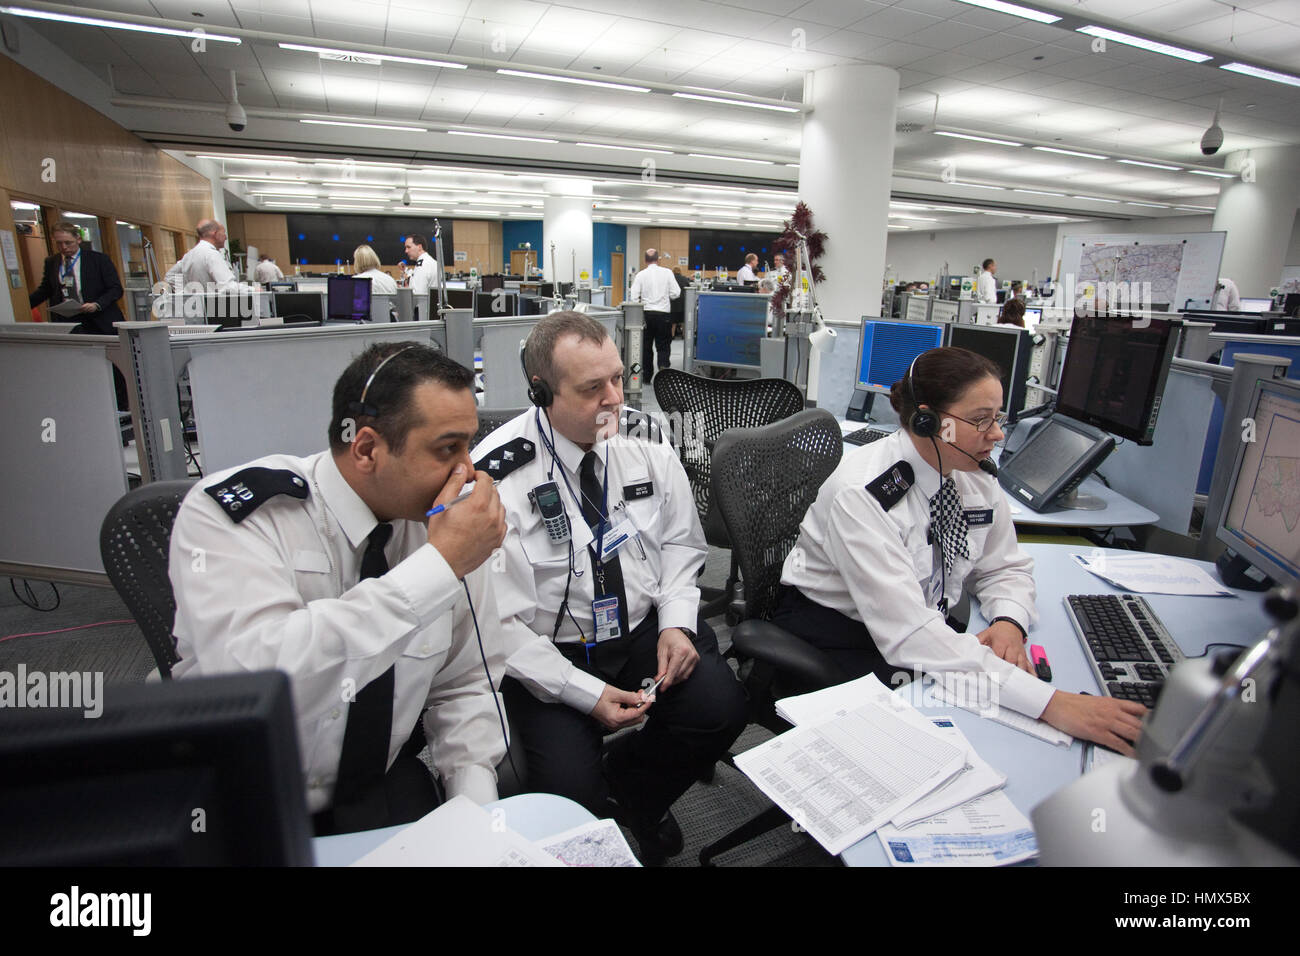 La policía metropolitana Centro de Comando Central de Comunicación, la unidad de mando operativo de la Policía Metropolitana de Londres, Servicio de Lambeth, Londres, Inglaterra. Foto de stock